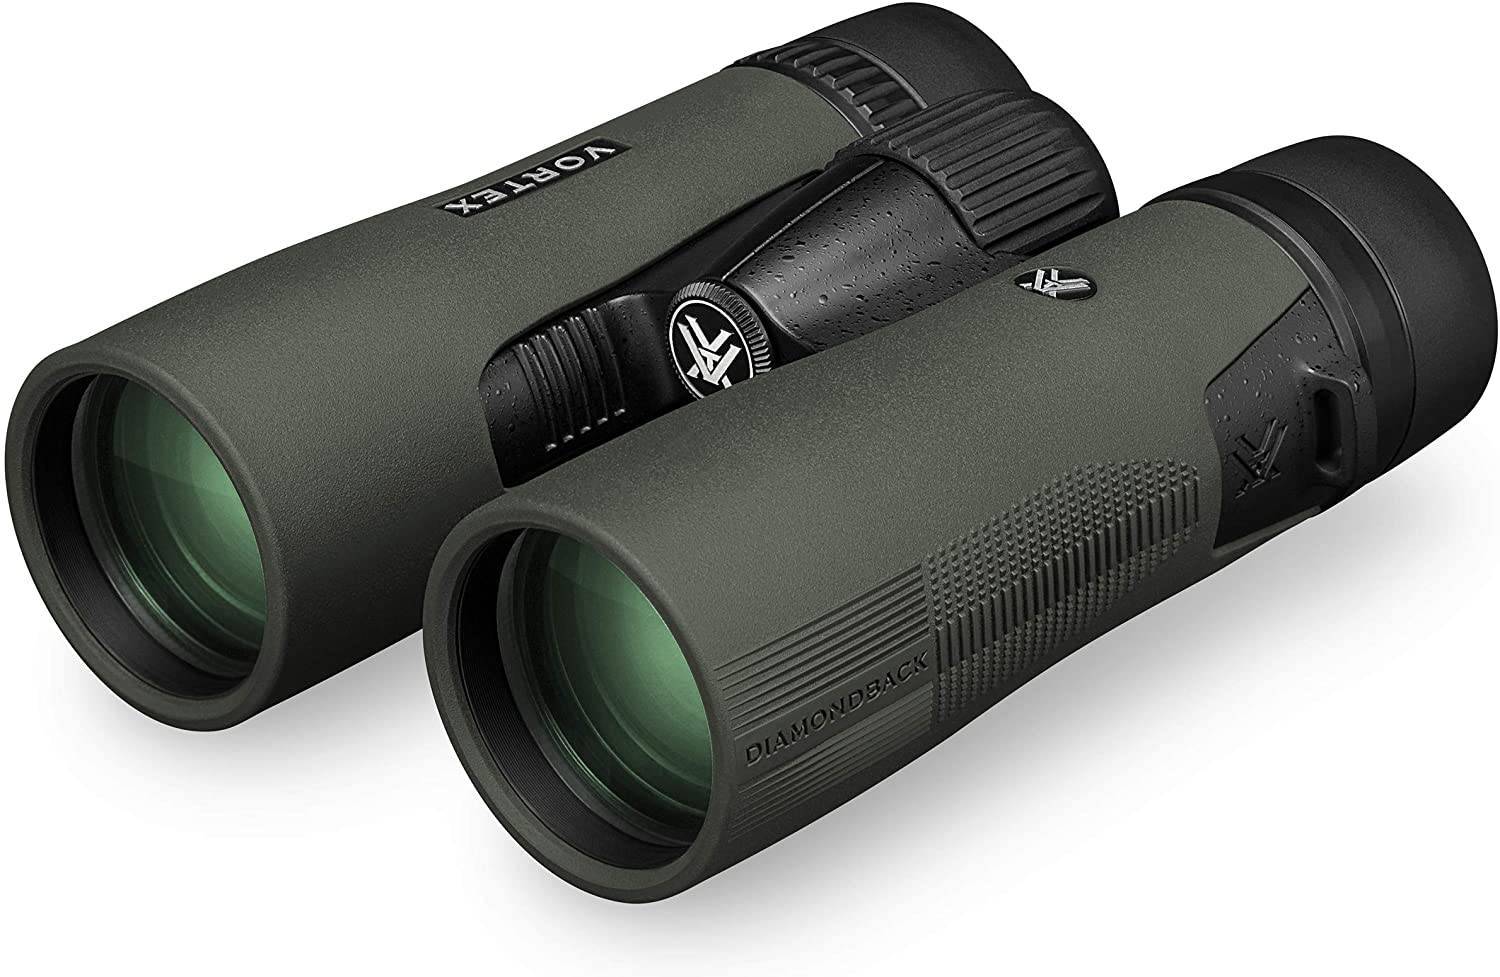 Vortex Diamondback DB215 10x42 - Best Binoculars for Bird Watching In The Garden